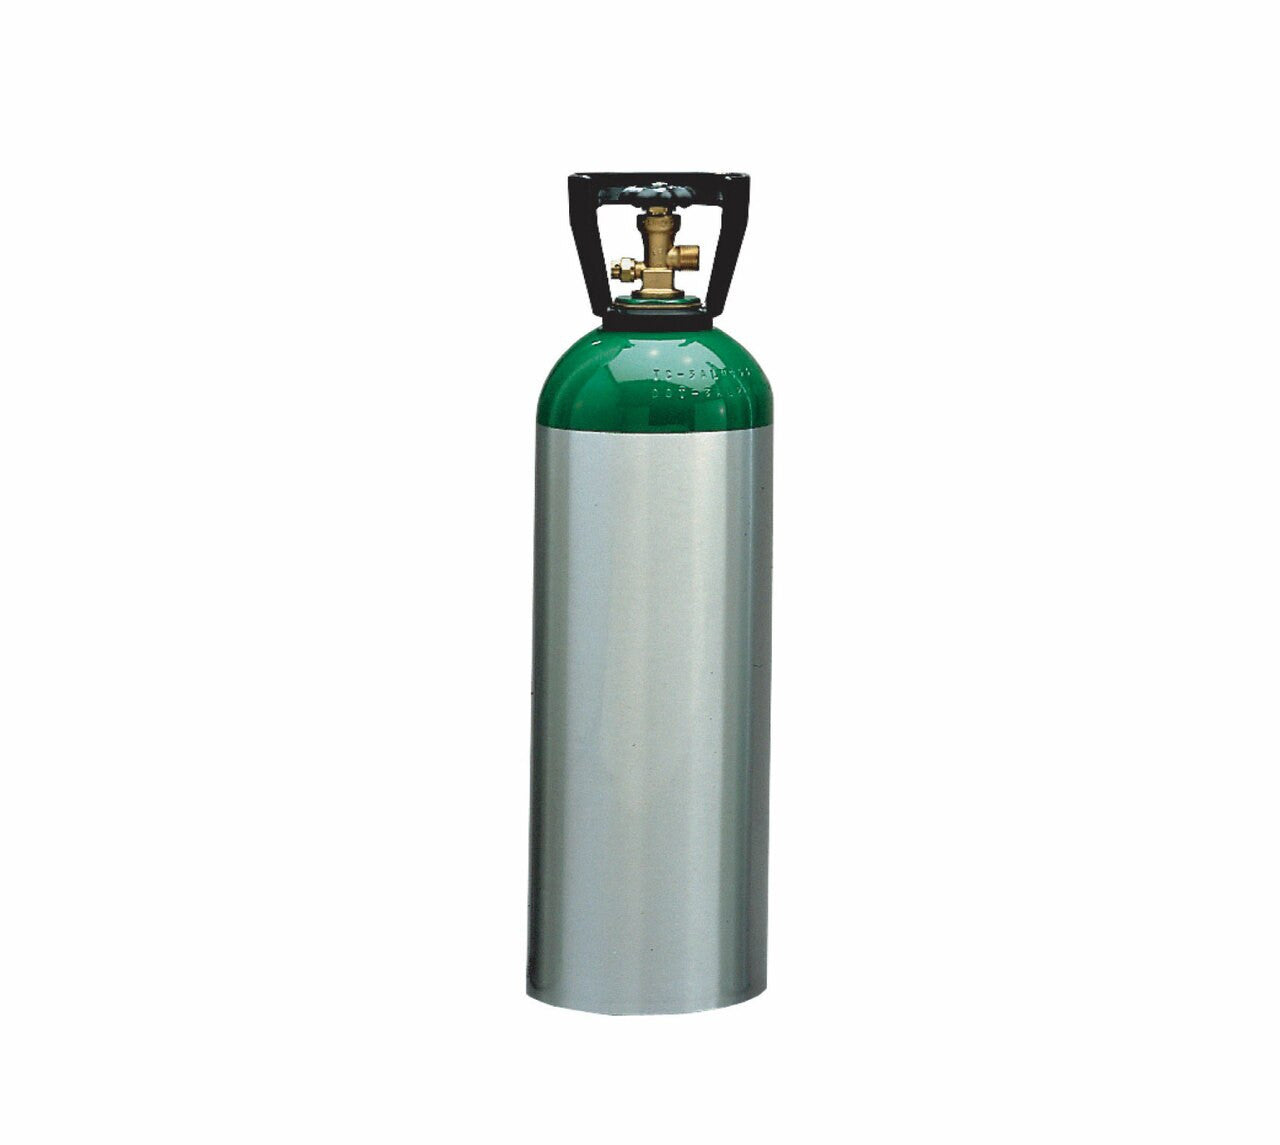 Meret M60 Medical Oxygen Cylinder